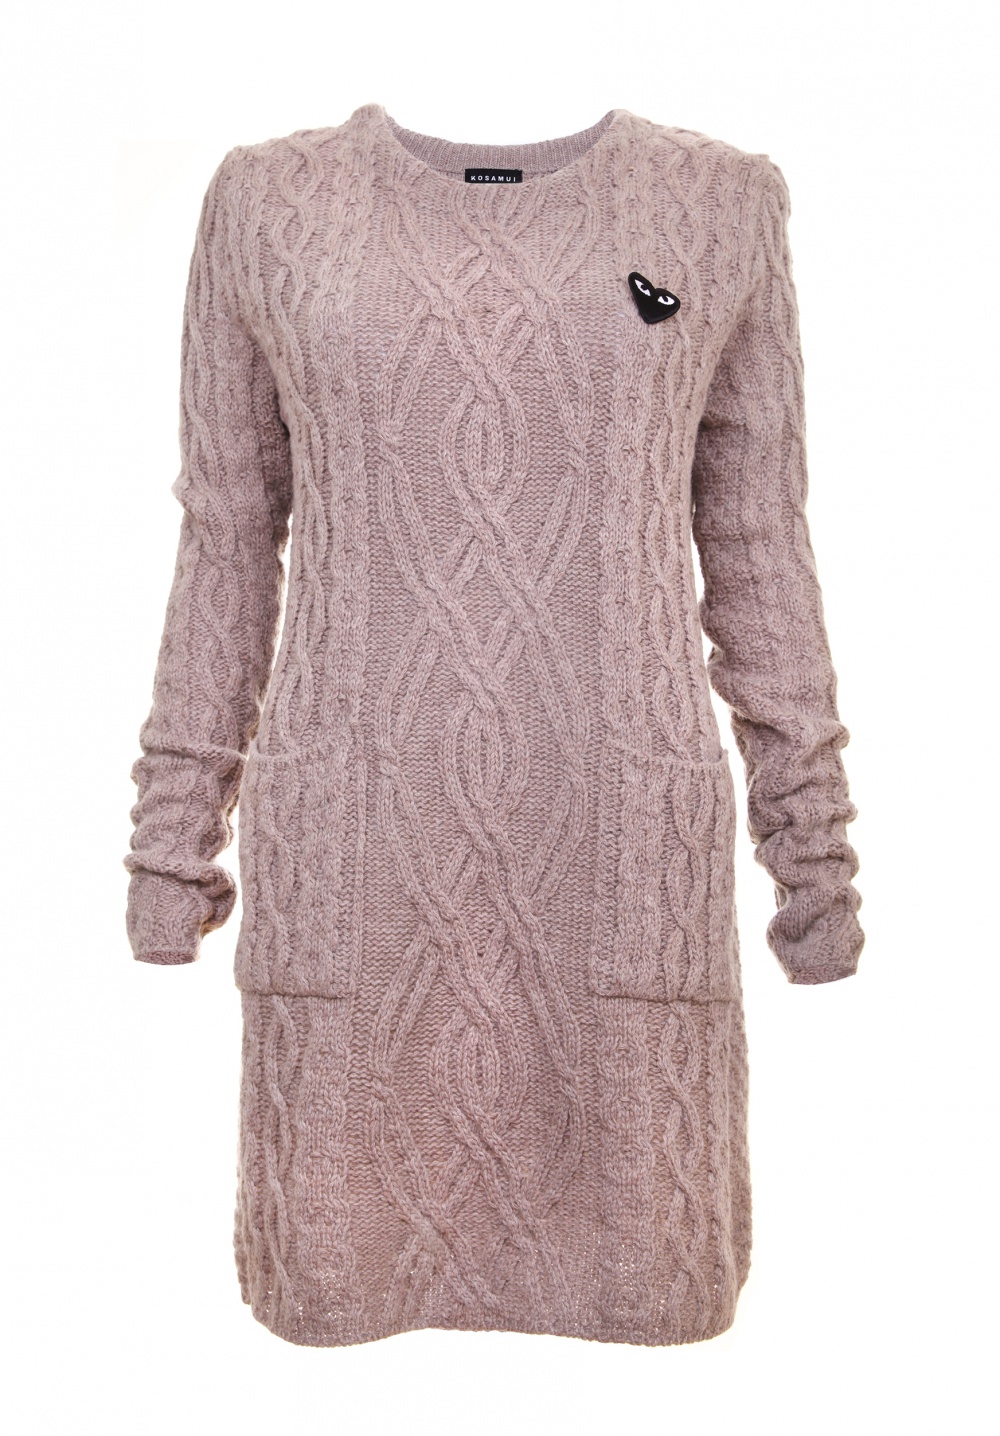 Шерстяное платье kosamui, размер S